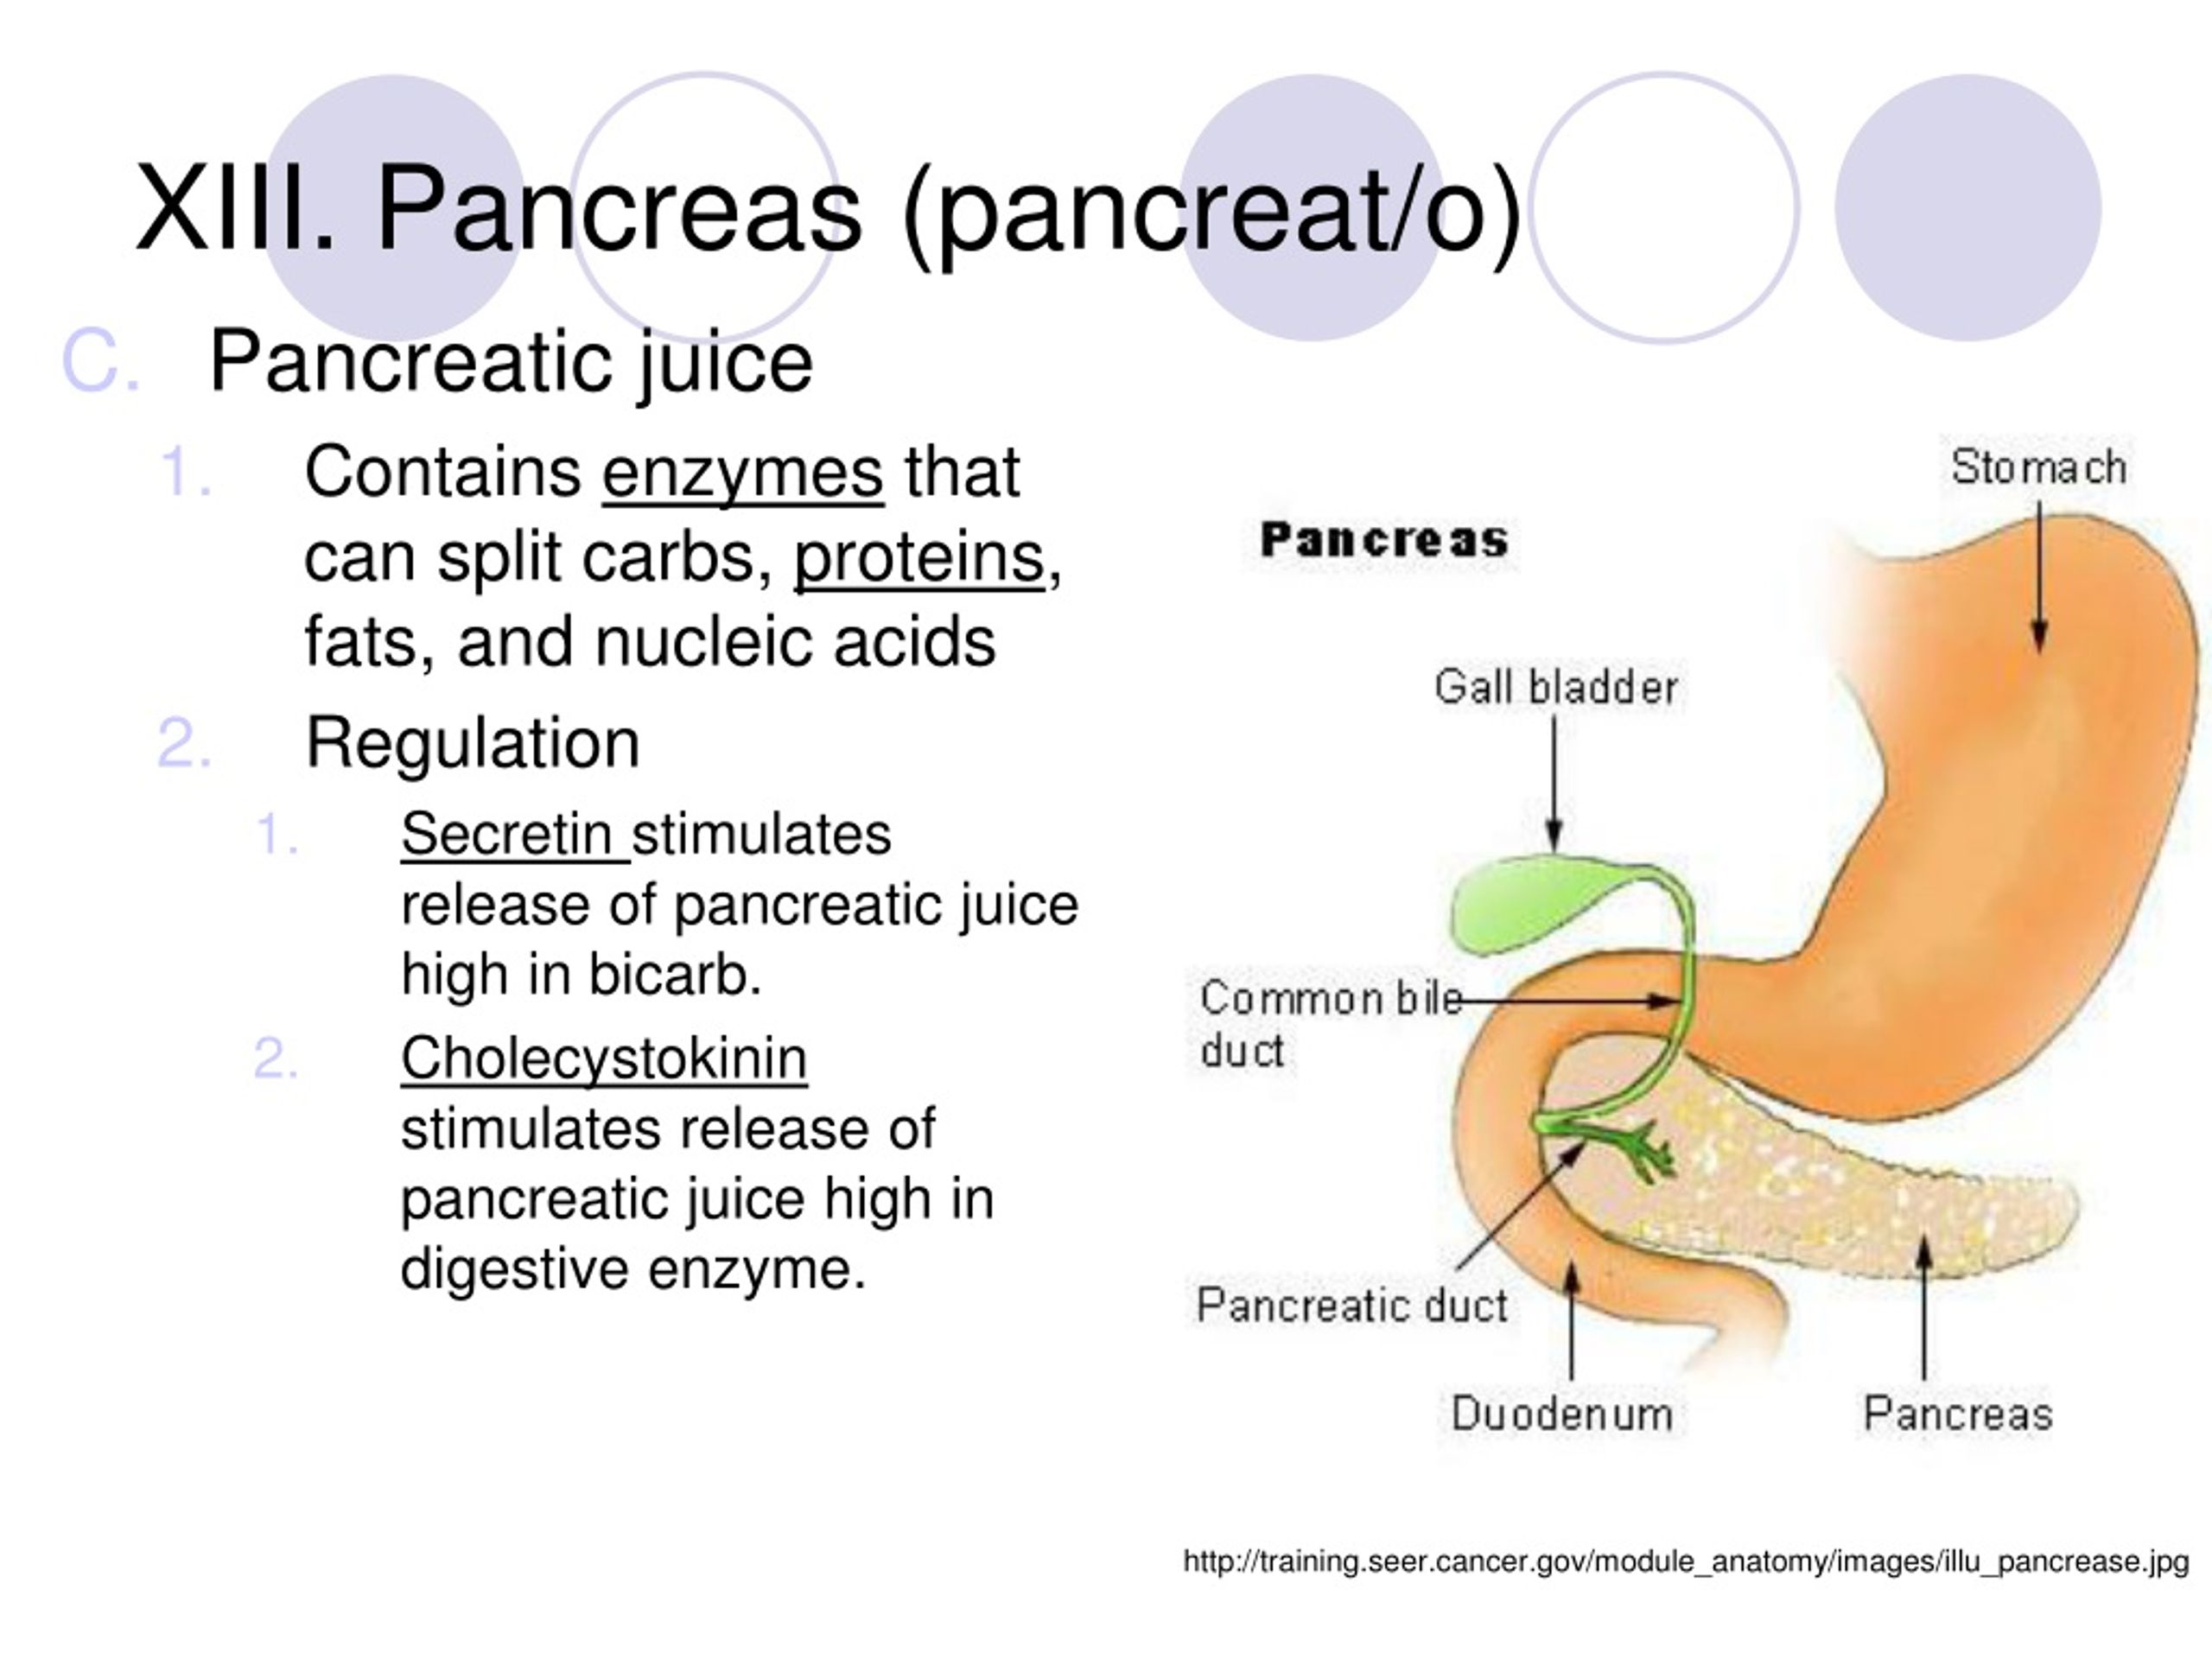 Como cuidar el pancreas